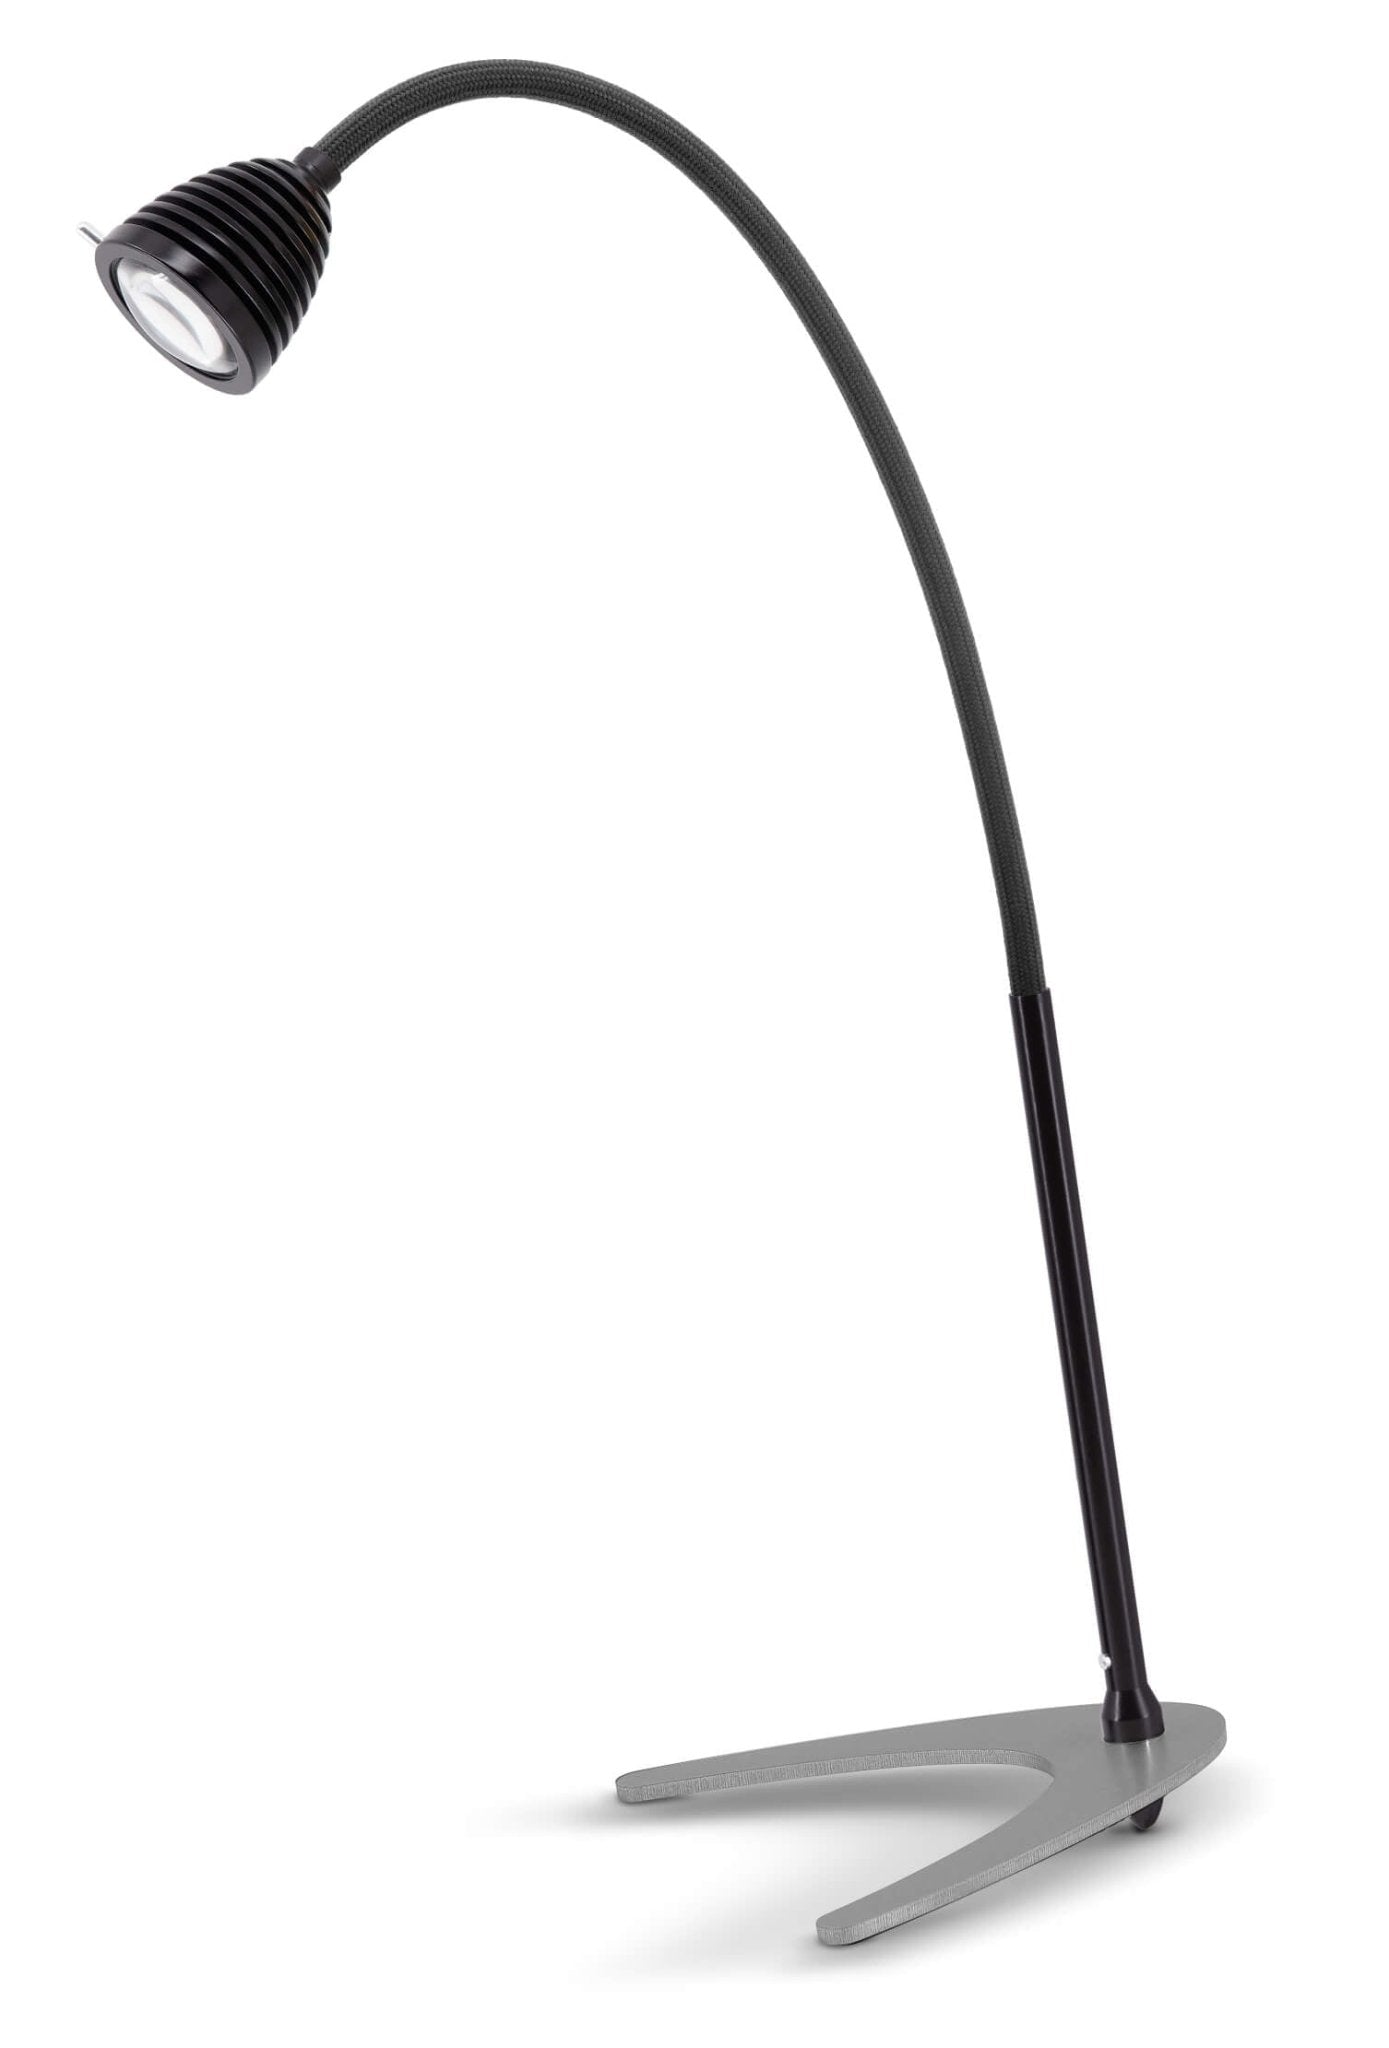 Less 'n' more - Athene TL Groot Tafellamp zwart - KOOT